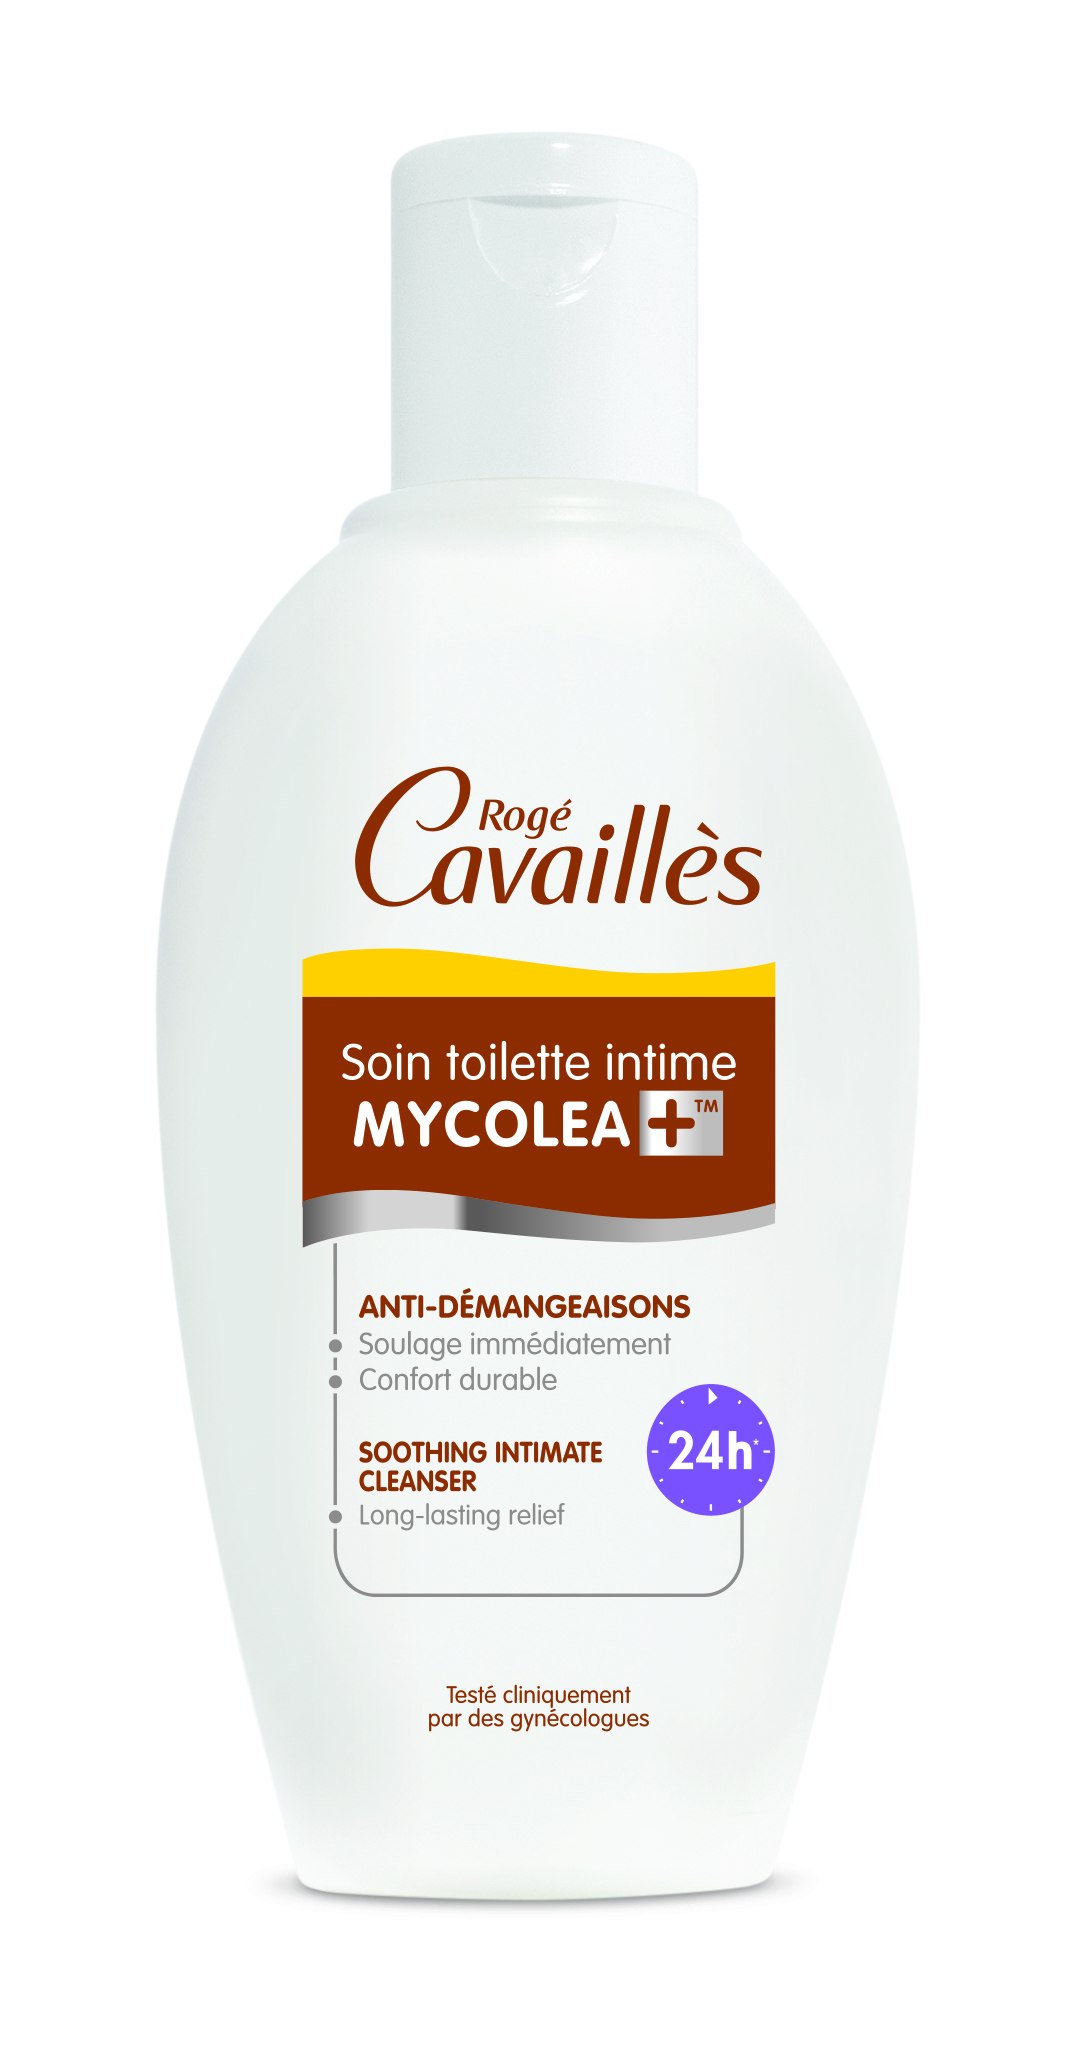 Soin toilette intime Mycolea muqueuses irritées Rogé Cavaillès - flacon 200 ml